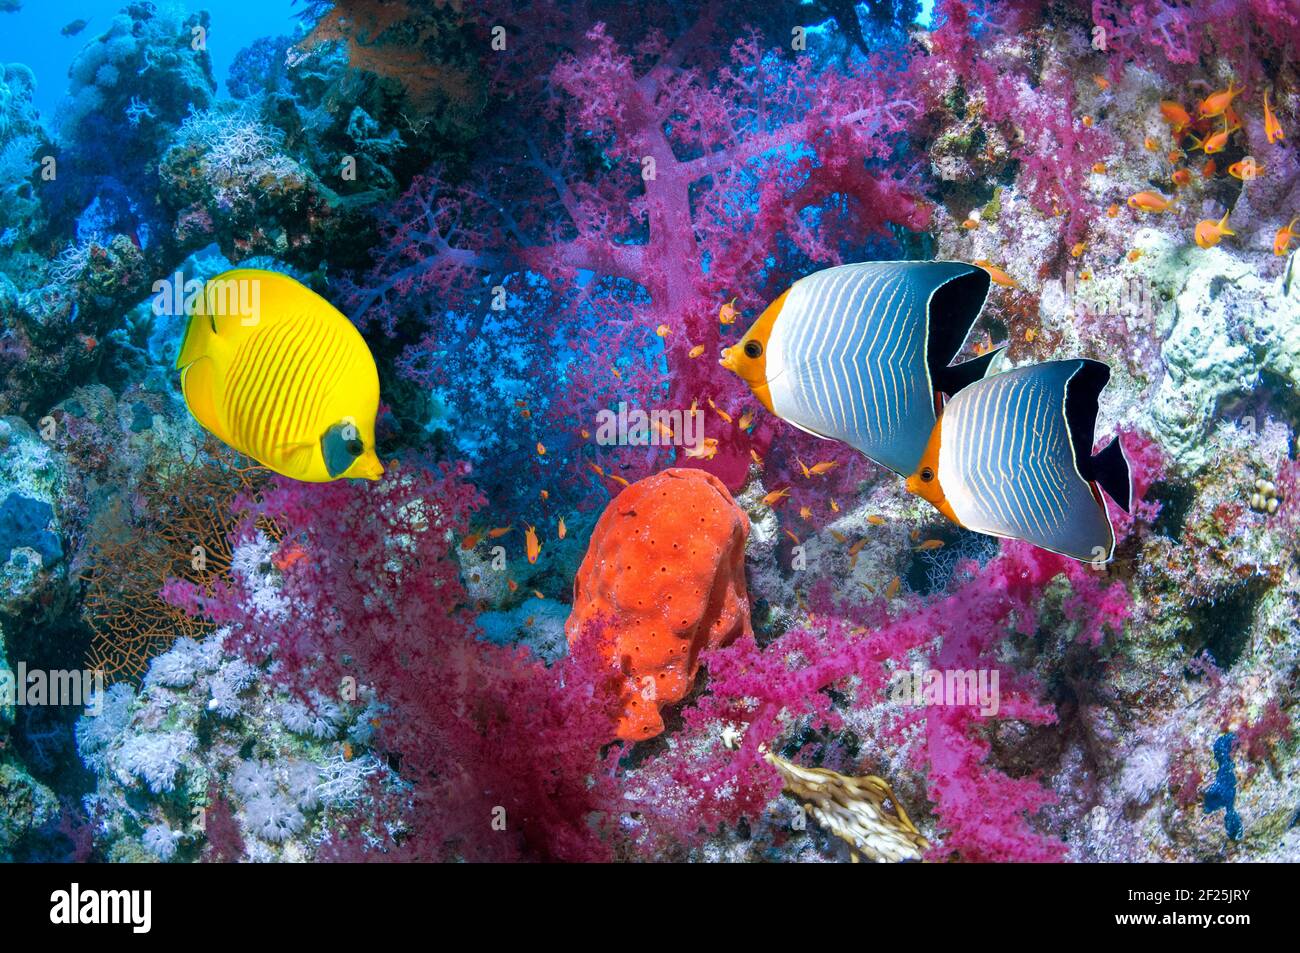 Paisaje de arrecifes de coral con un pez mariposa dorado [Chaetodon semilarvatus] y. Un par de cara anaranjada o Butterflyfish con capucha [Chaetodon larvatus] y sof Foto de stock